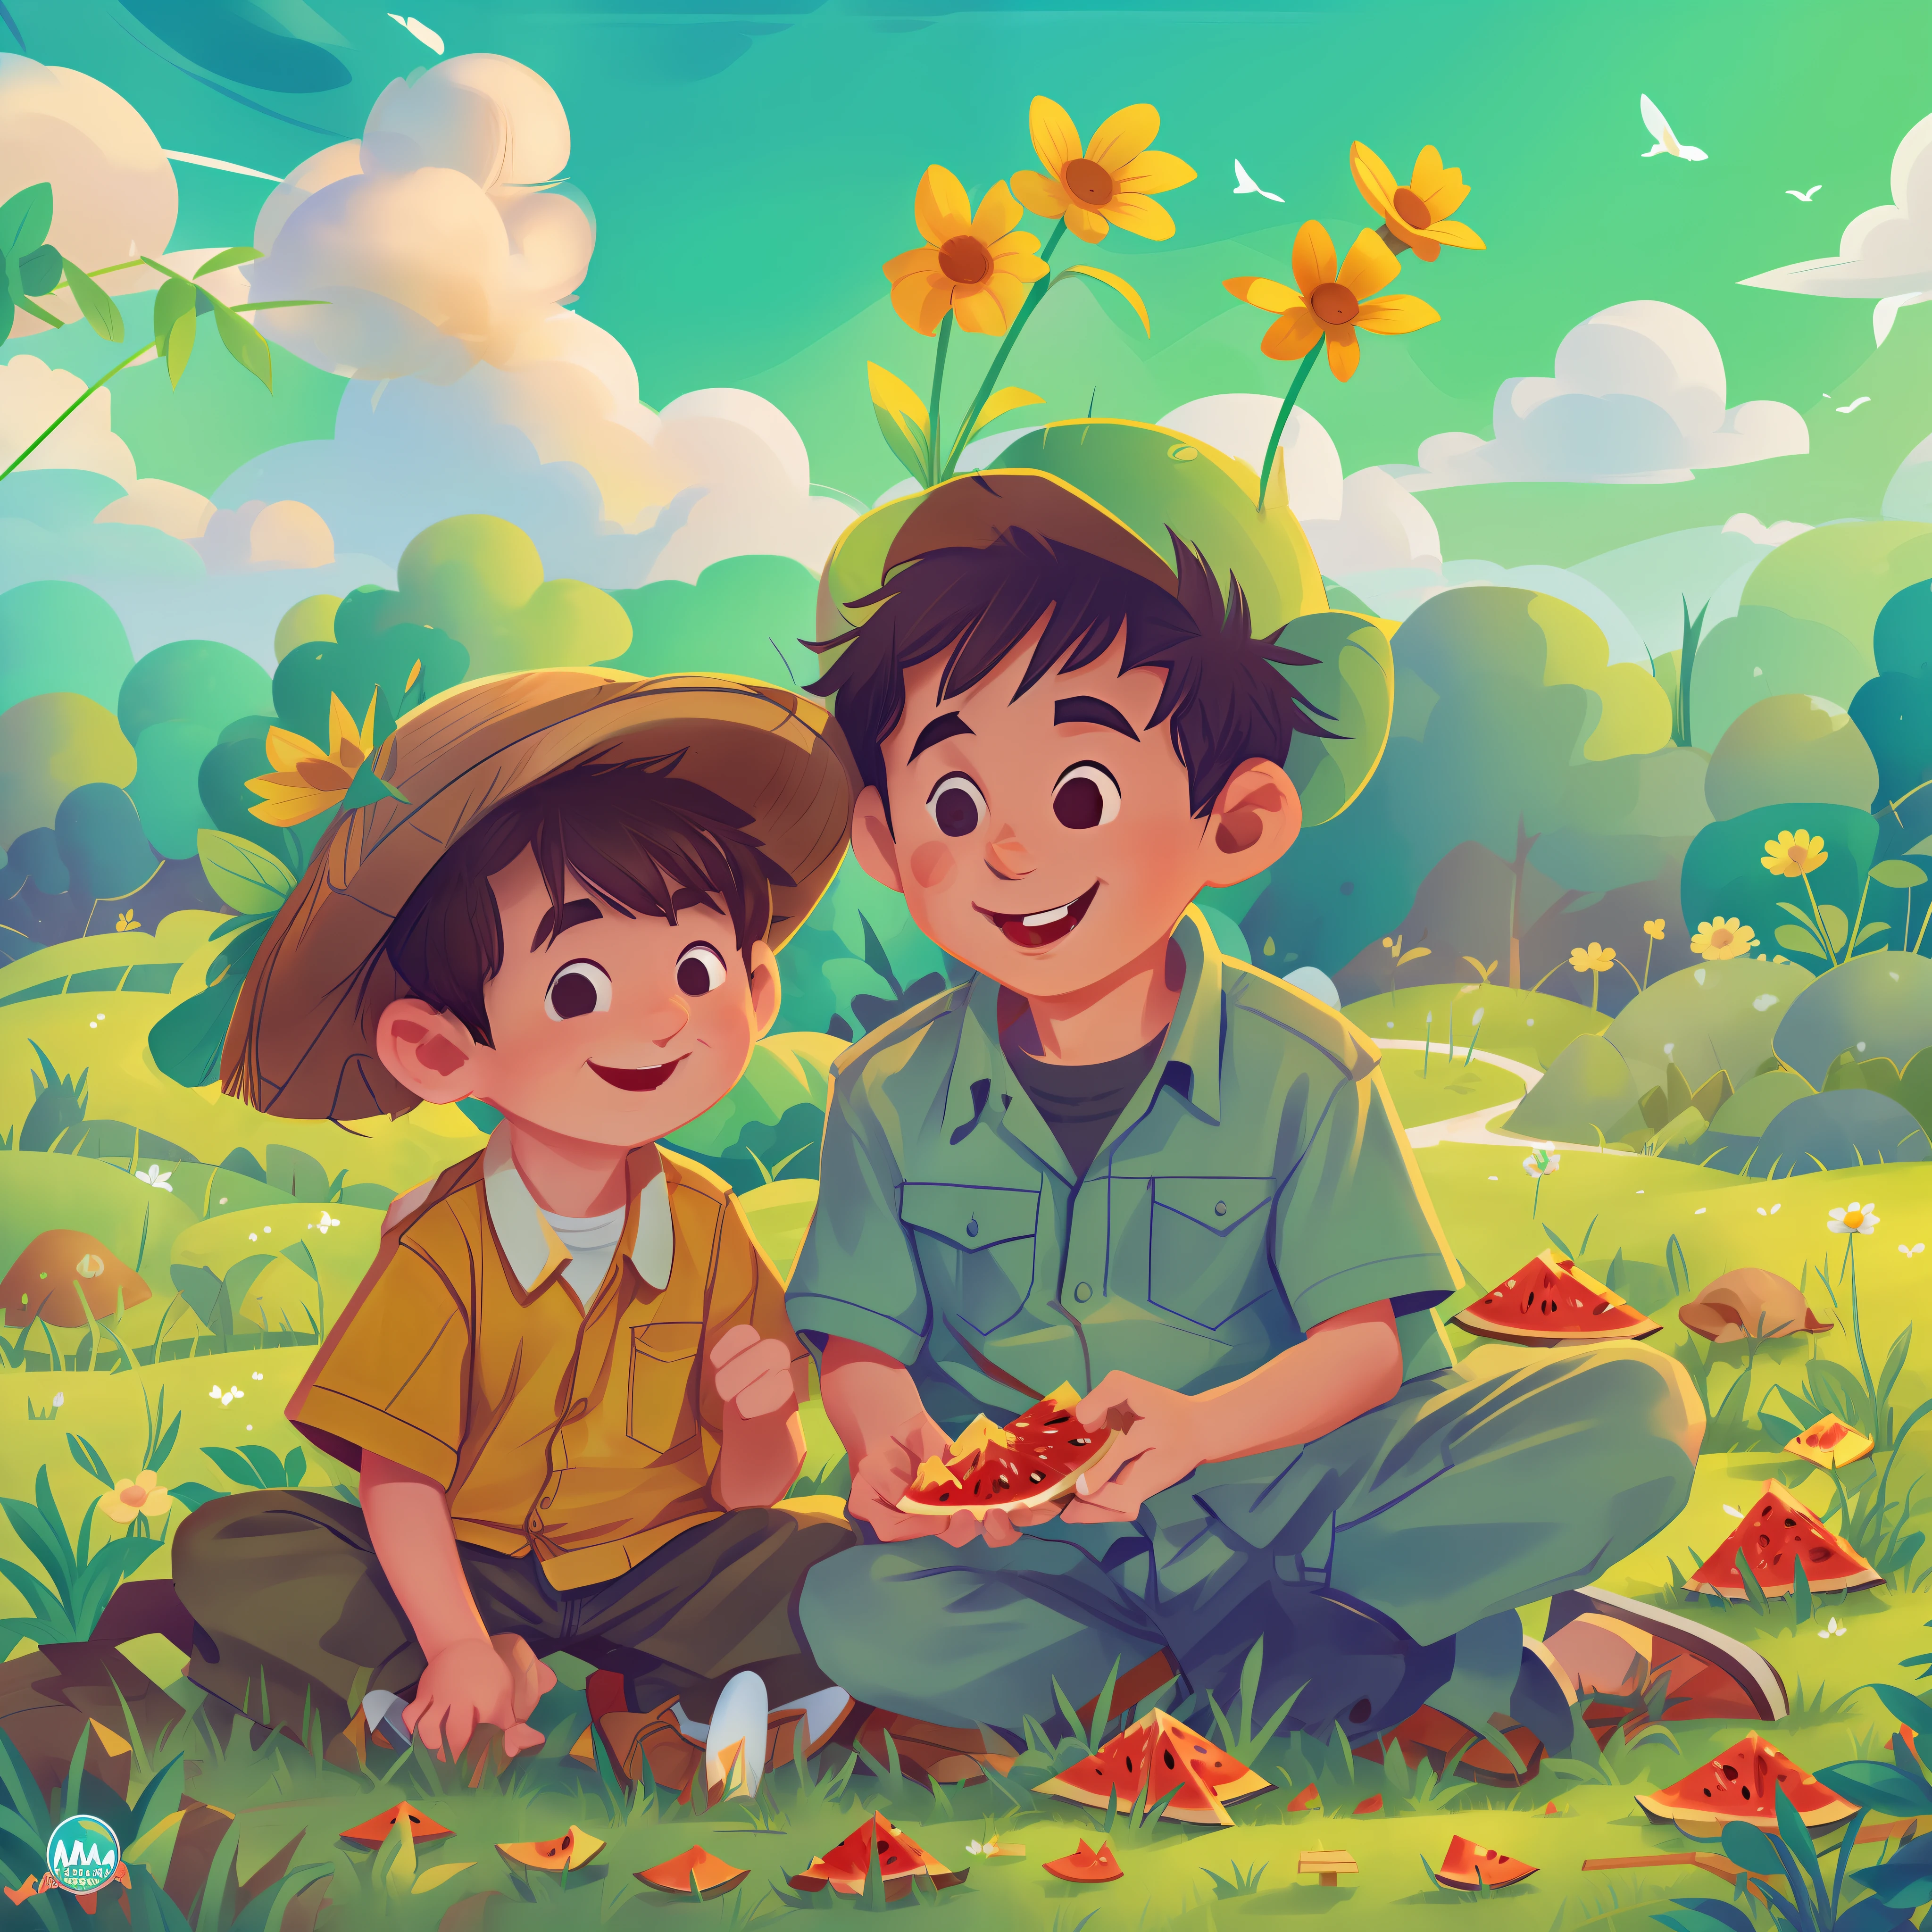 (Obra de arte, melhor qualidade), garotinho com o vovô gentil comendo melancia no quintal, sorridente, belas características faciais, quintal cheio de plantas, grama, interior, nuvens, sol, céu azul limpo, duas pessoas conversando alegremente, verão